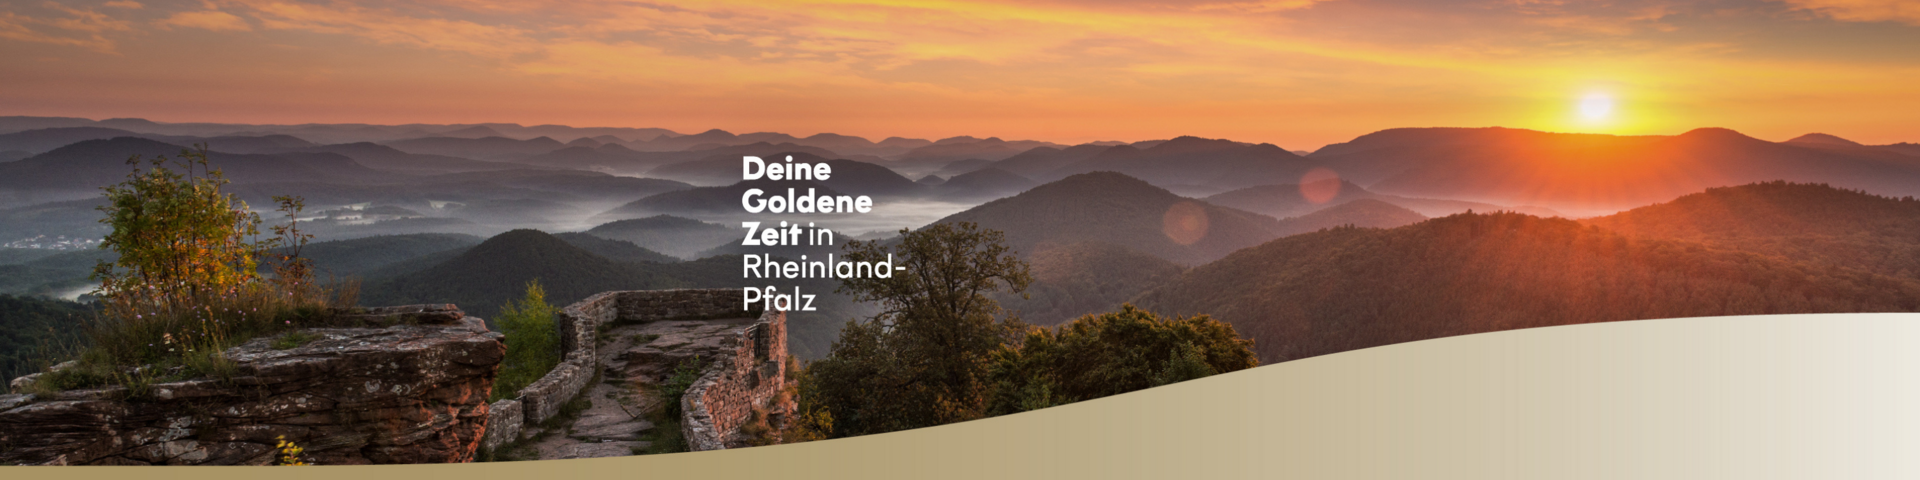 Deine goldene Zeit in Rheinland-Pfalz.